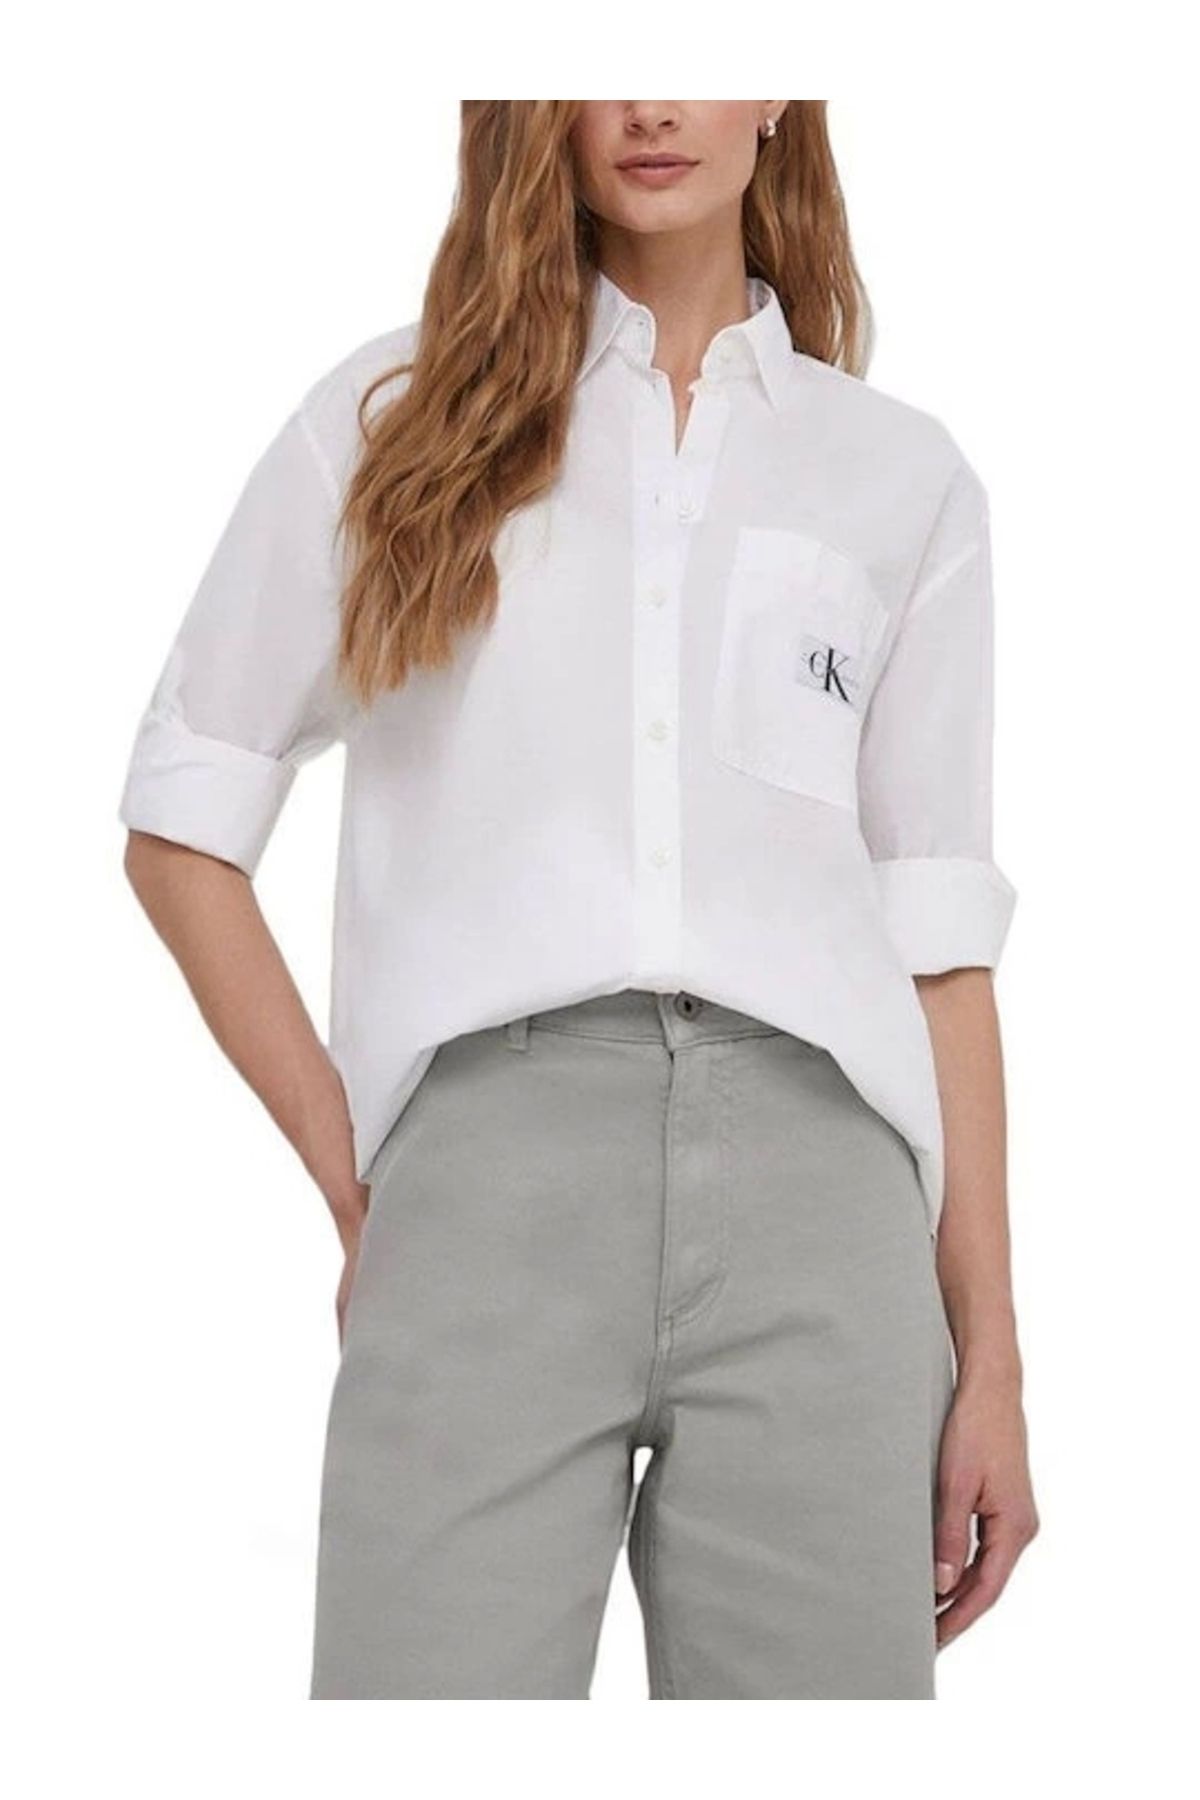 Calvin Klein Kadın Woven Label Beyaz Gömlek